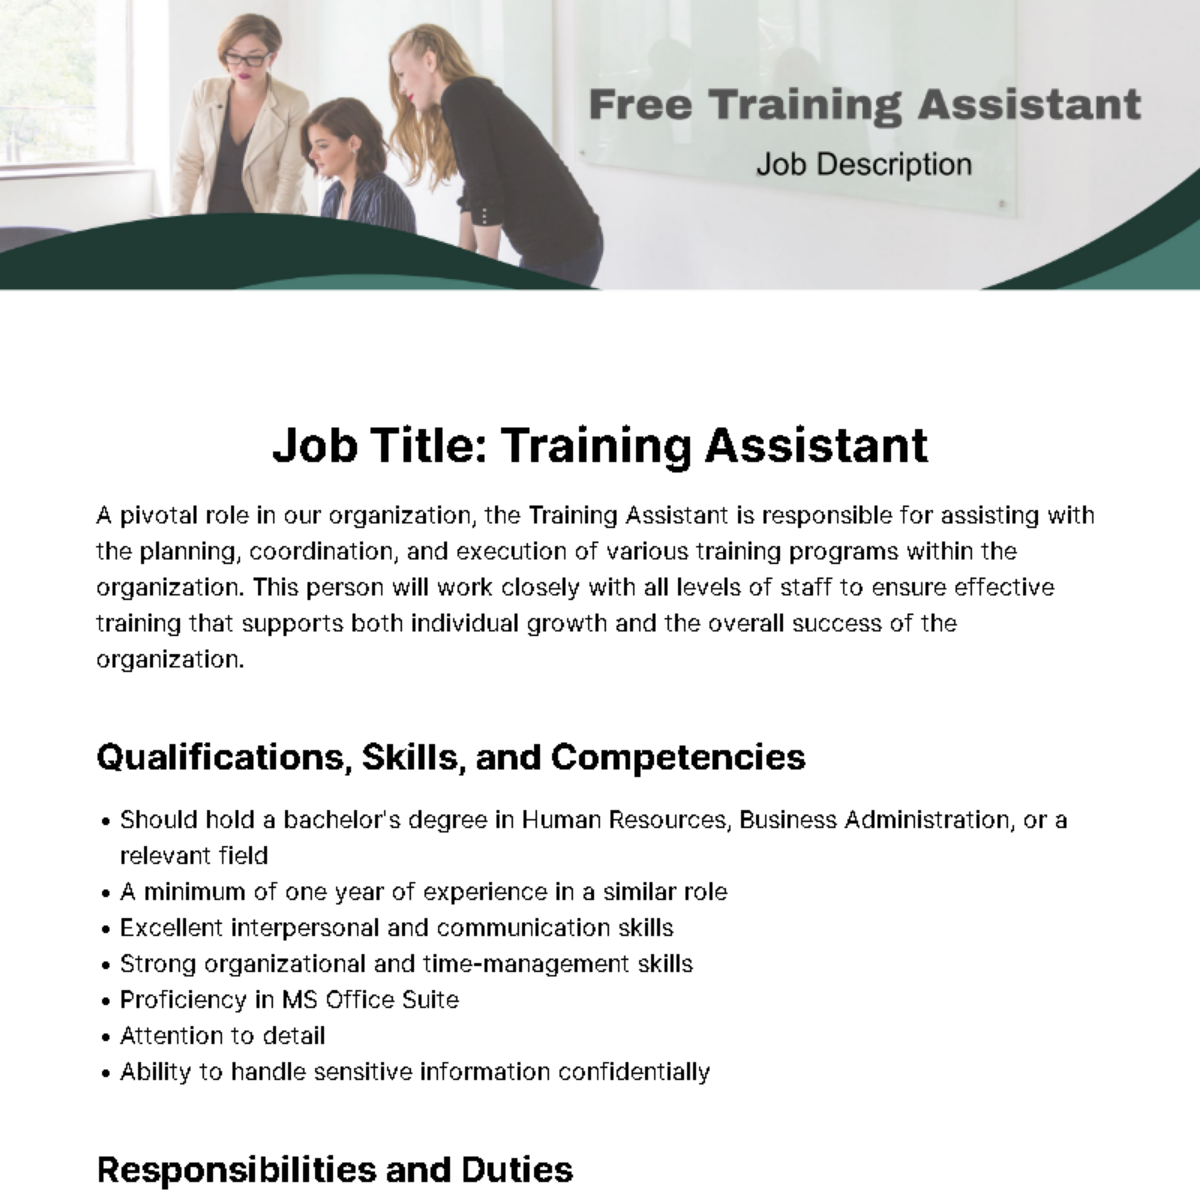 Free Training Assistant Job Description Template